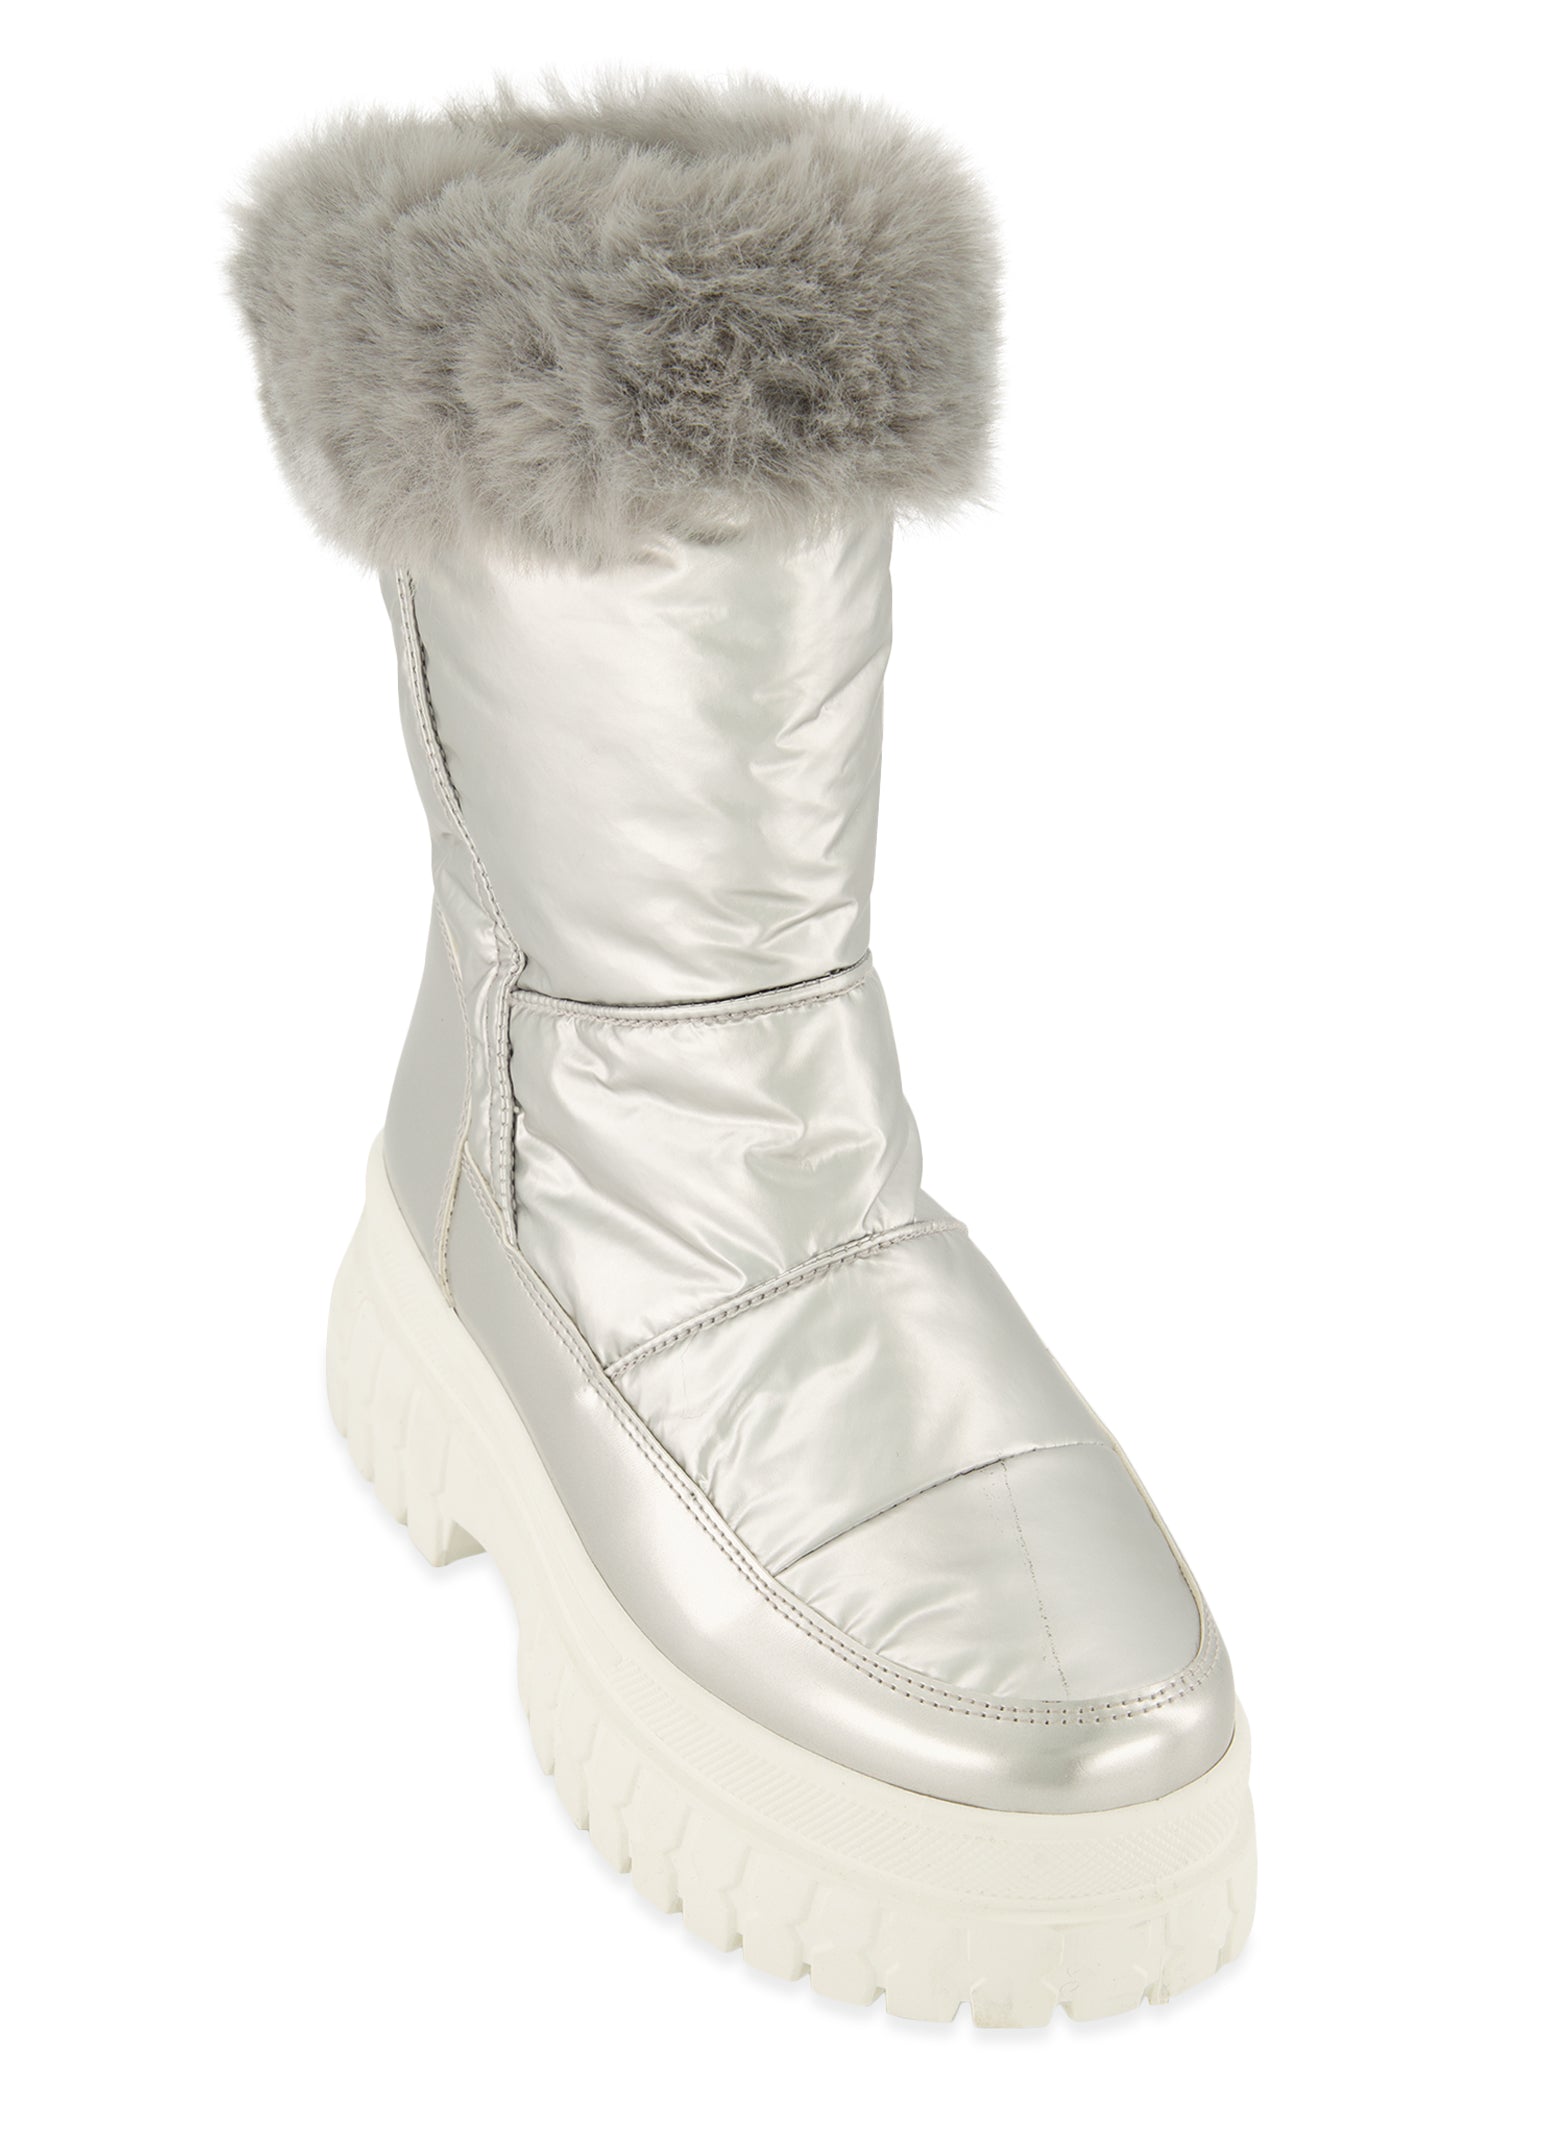 Womens Faux Fur Side Zip Weatherproof Snow Boots, Silver, Size 8.5